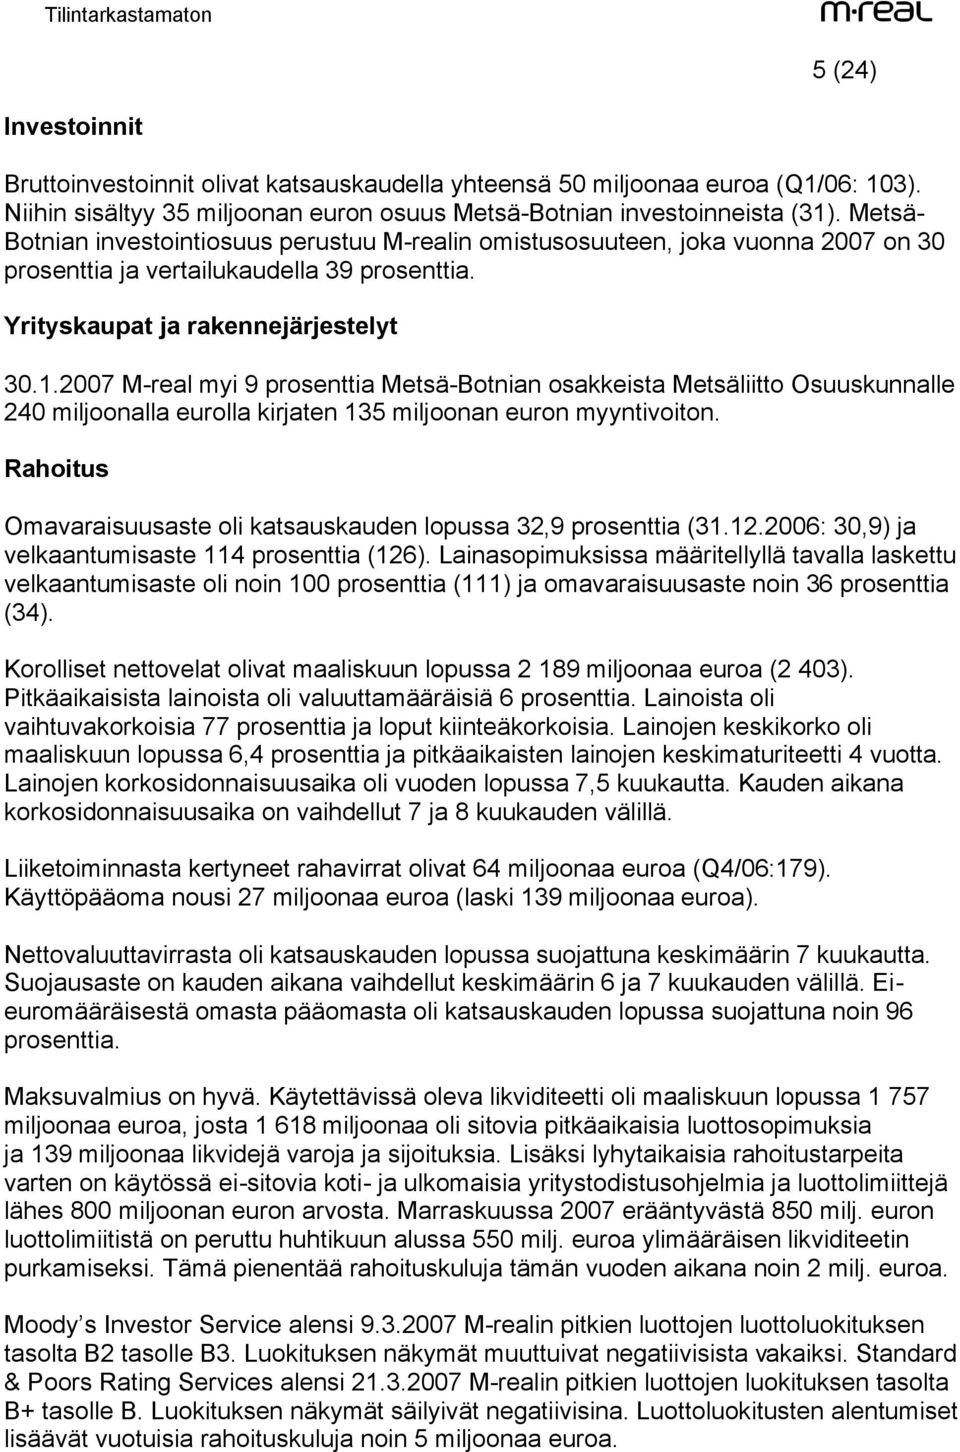 2007 M-real myi 9 prosenttia Metsä-Botnian osakkeista Metsäliitto Osuuskunnalle 240 miljoonalla eurolla kirjaten 135 miljoonan euron myyntivoiton.